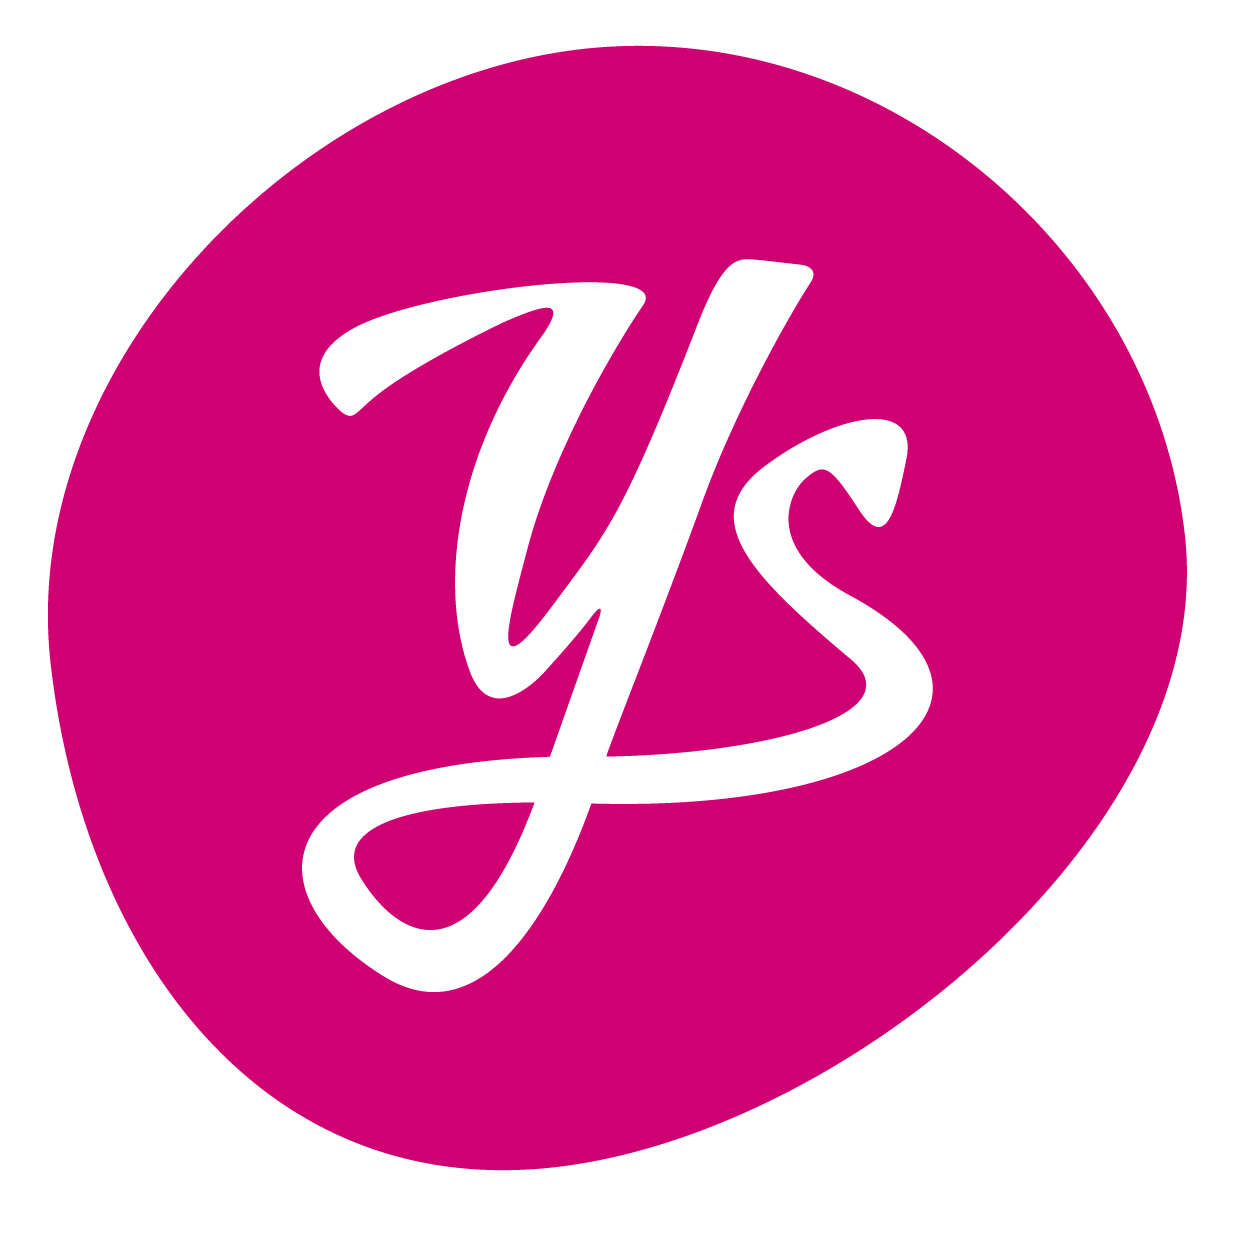 Sotwe di. YS логотип. Y.A.S. бренд. Лого буквы y s. Бренд y y.